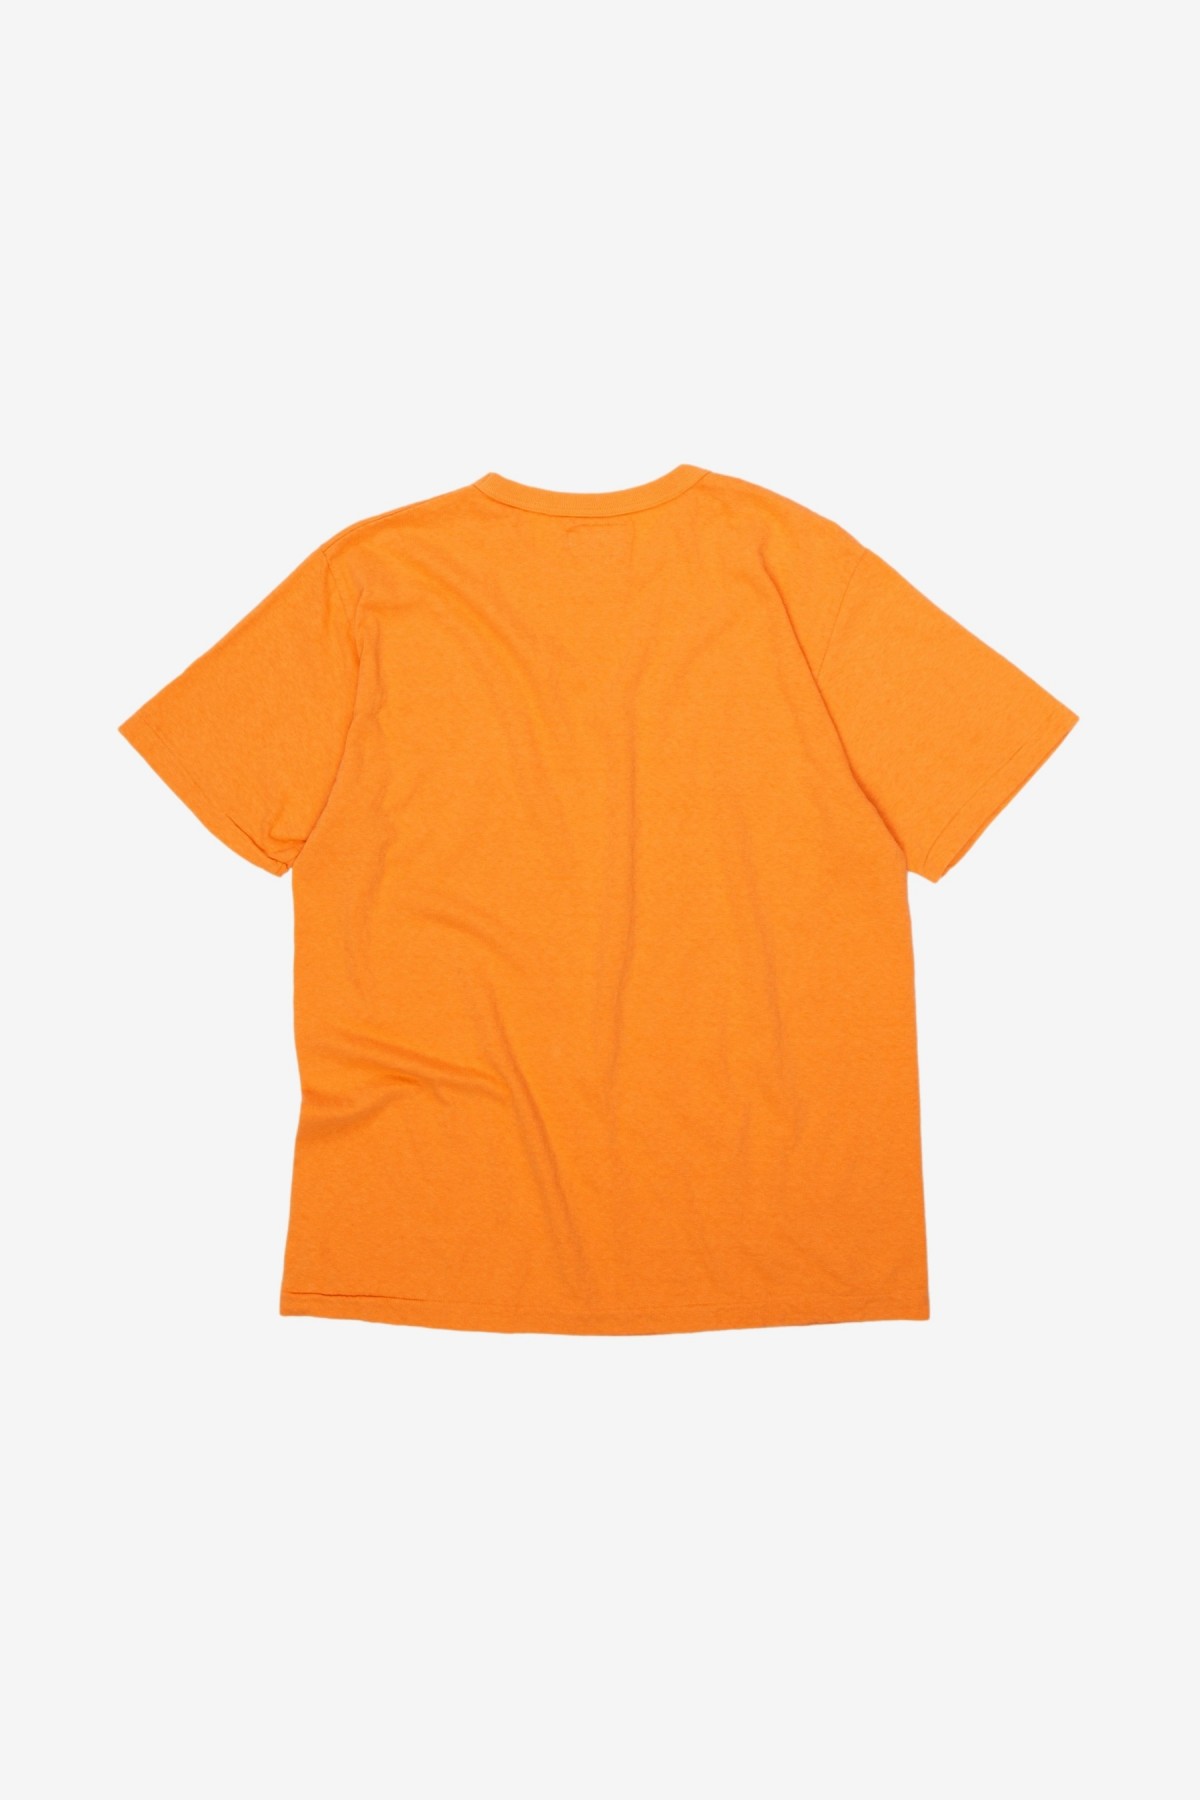 Sunray Sportswear Haleiwa Short Sleeve T-Shirt in Musk Melon